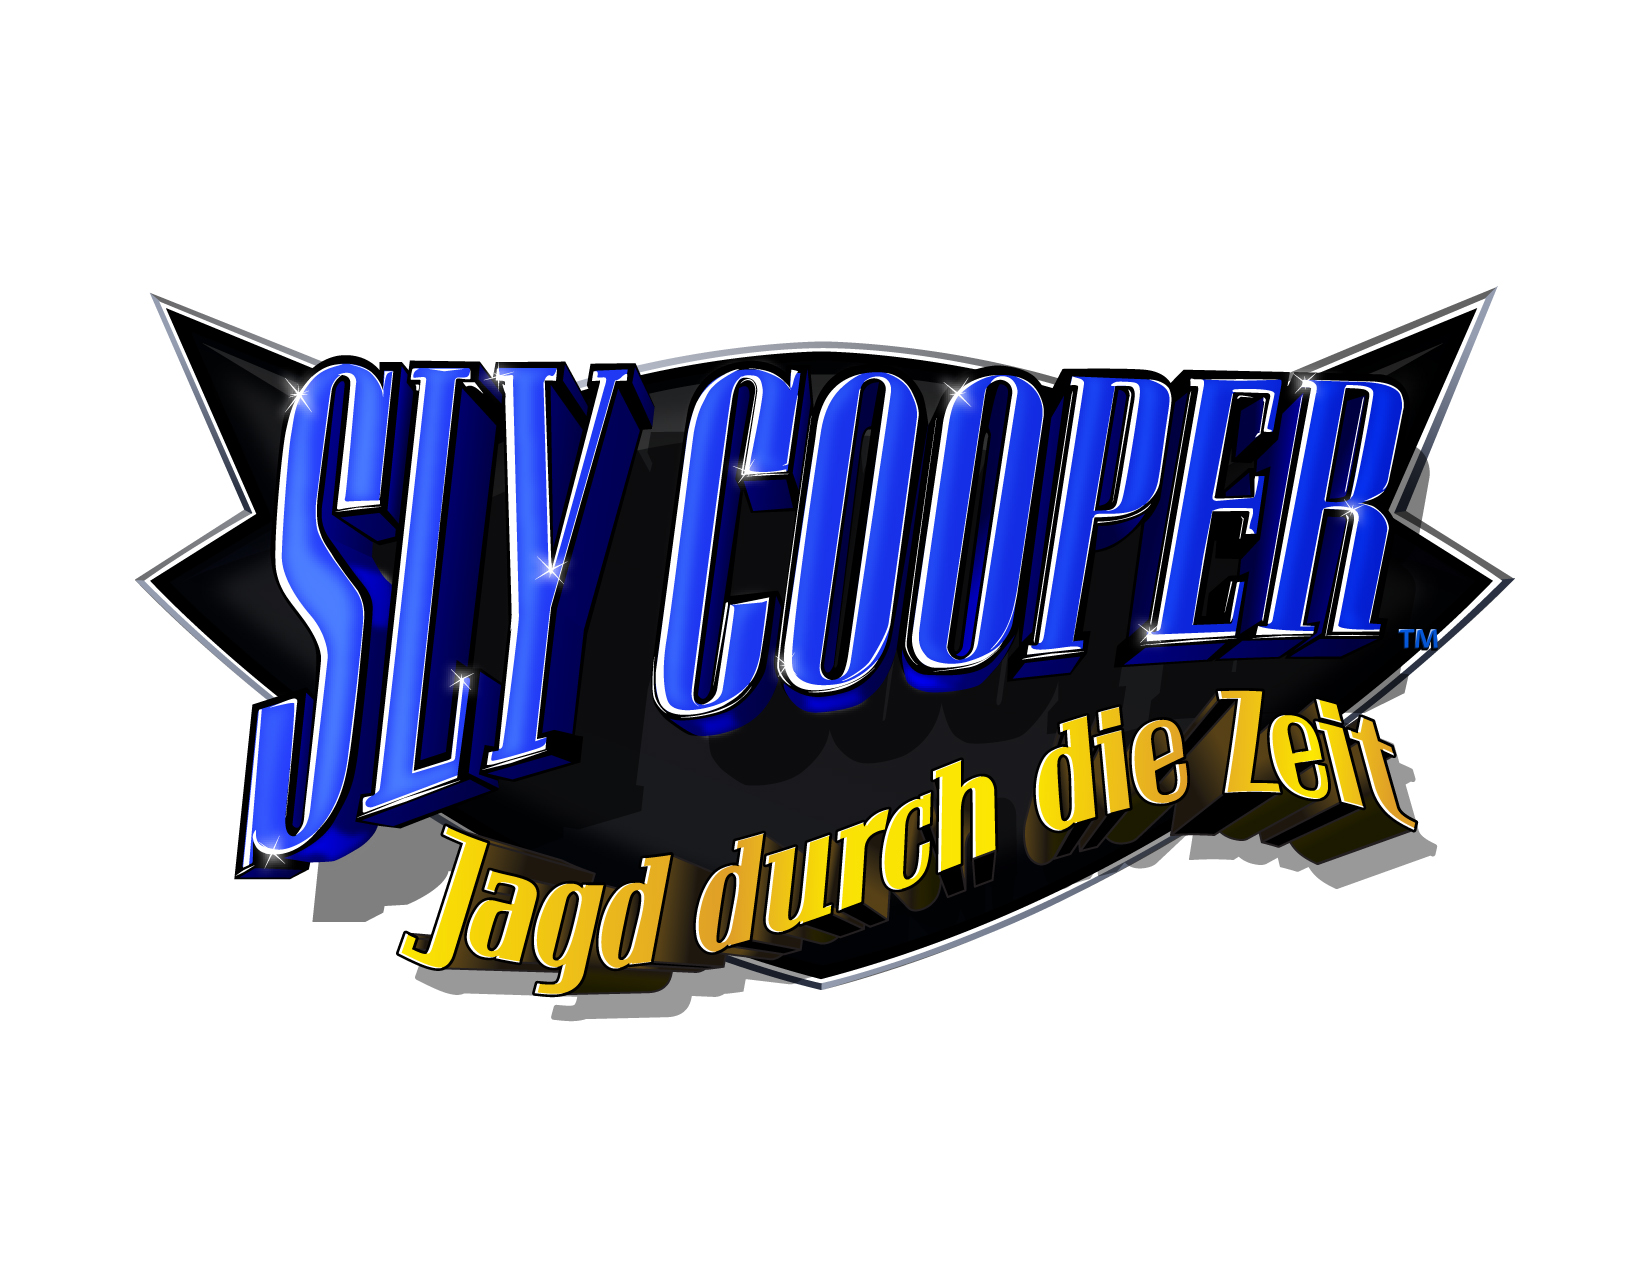 Sly Cooper: Jagd durch die Zeit